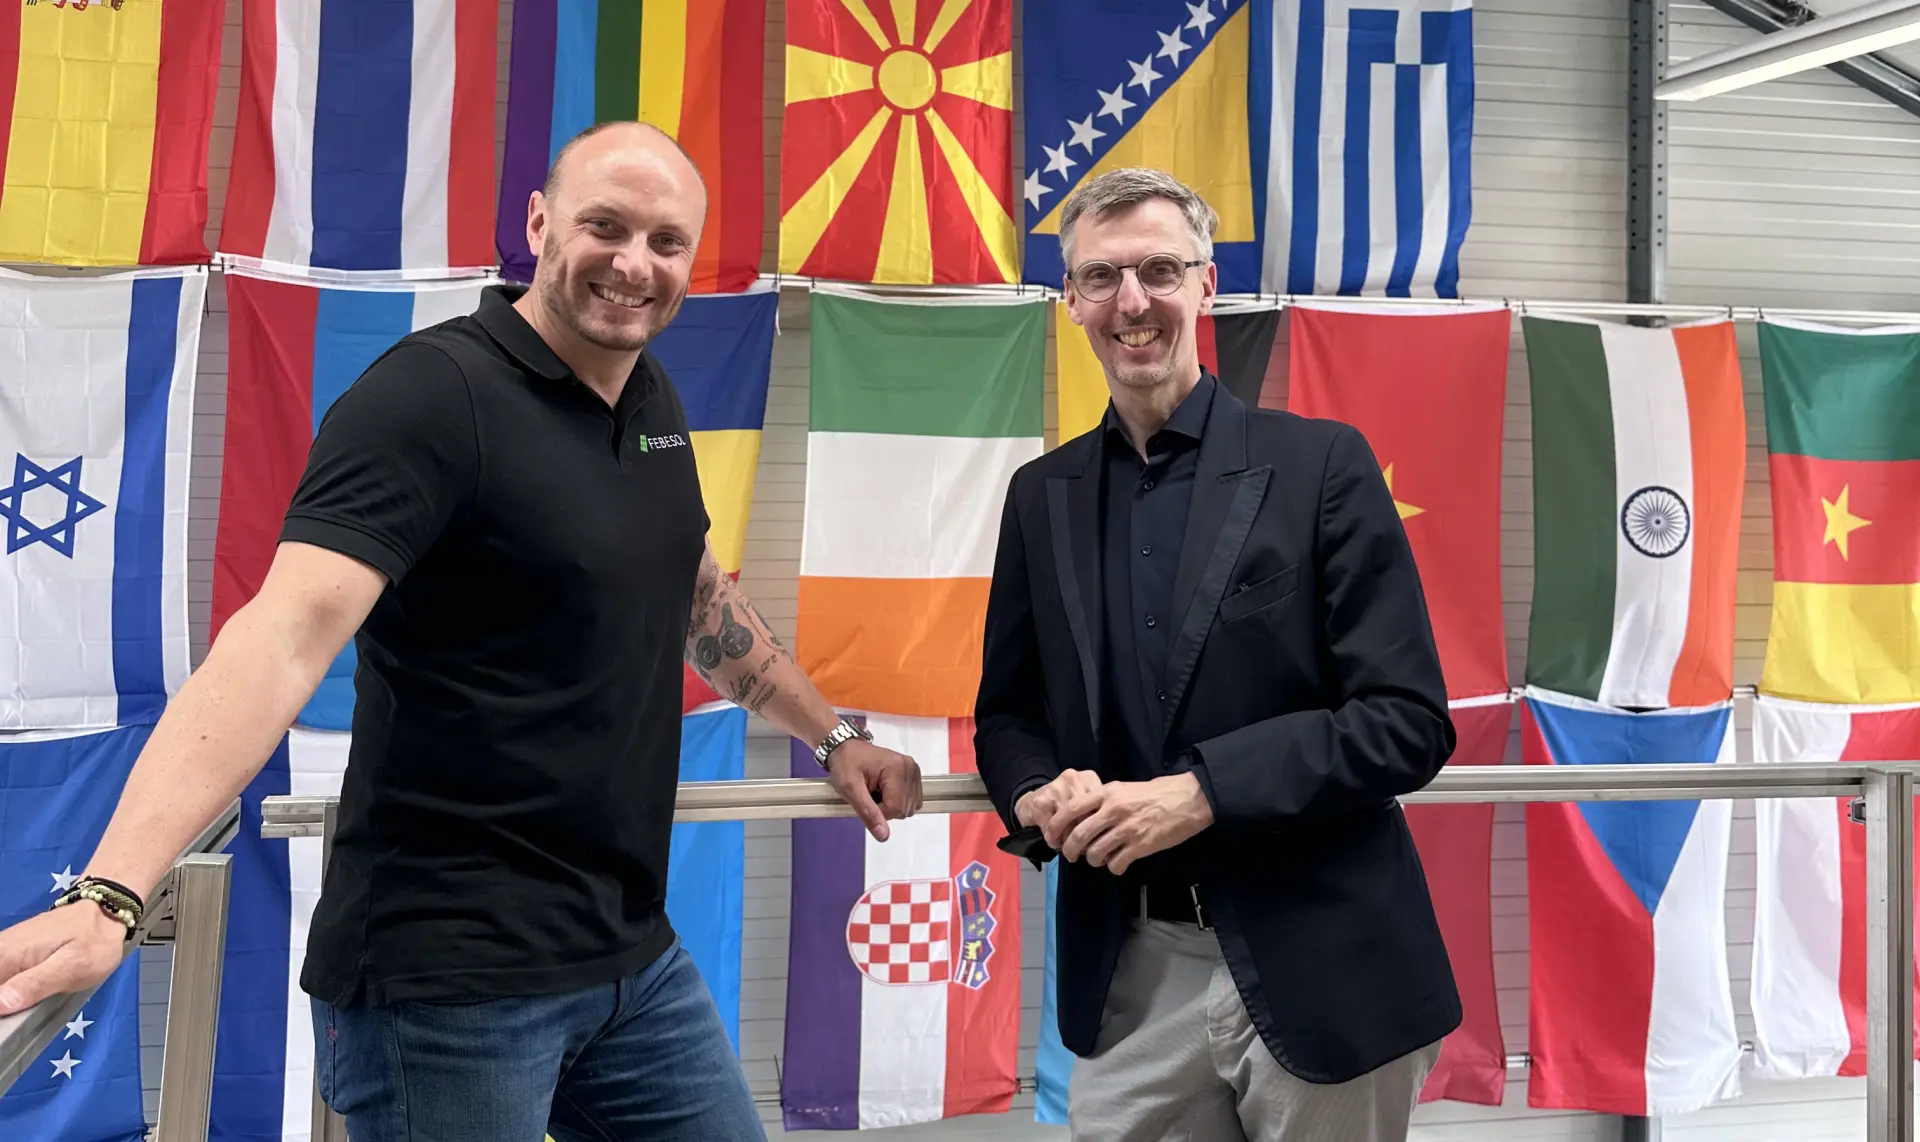 Zwei Männer schütteln sich vor einer Ausstellung verschiedener internationaler Flaggen die Hände bei der Girls‘ & Boys‘ Day-Veranstaltung bei FEBESOL in einem Innenbereich.